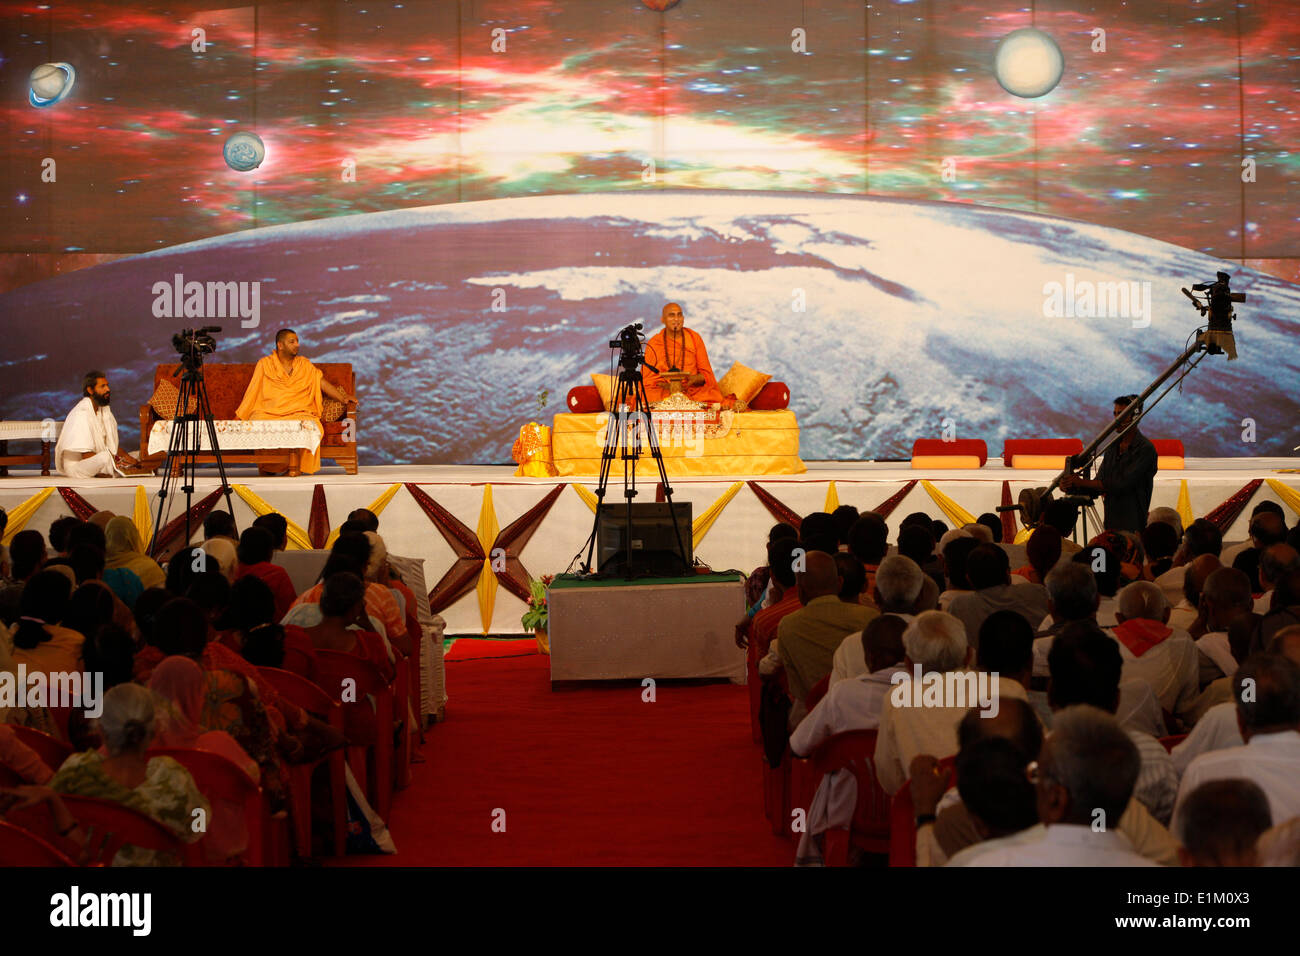 Il leader spirituale di Swami Avdeshanand Giri dando una lezione nella sua akhara in Kankhal durante il Kumbh Mela Foto Stock